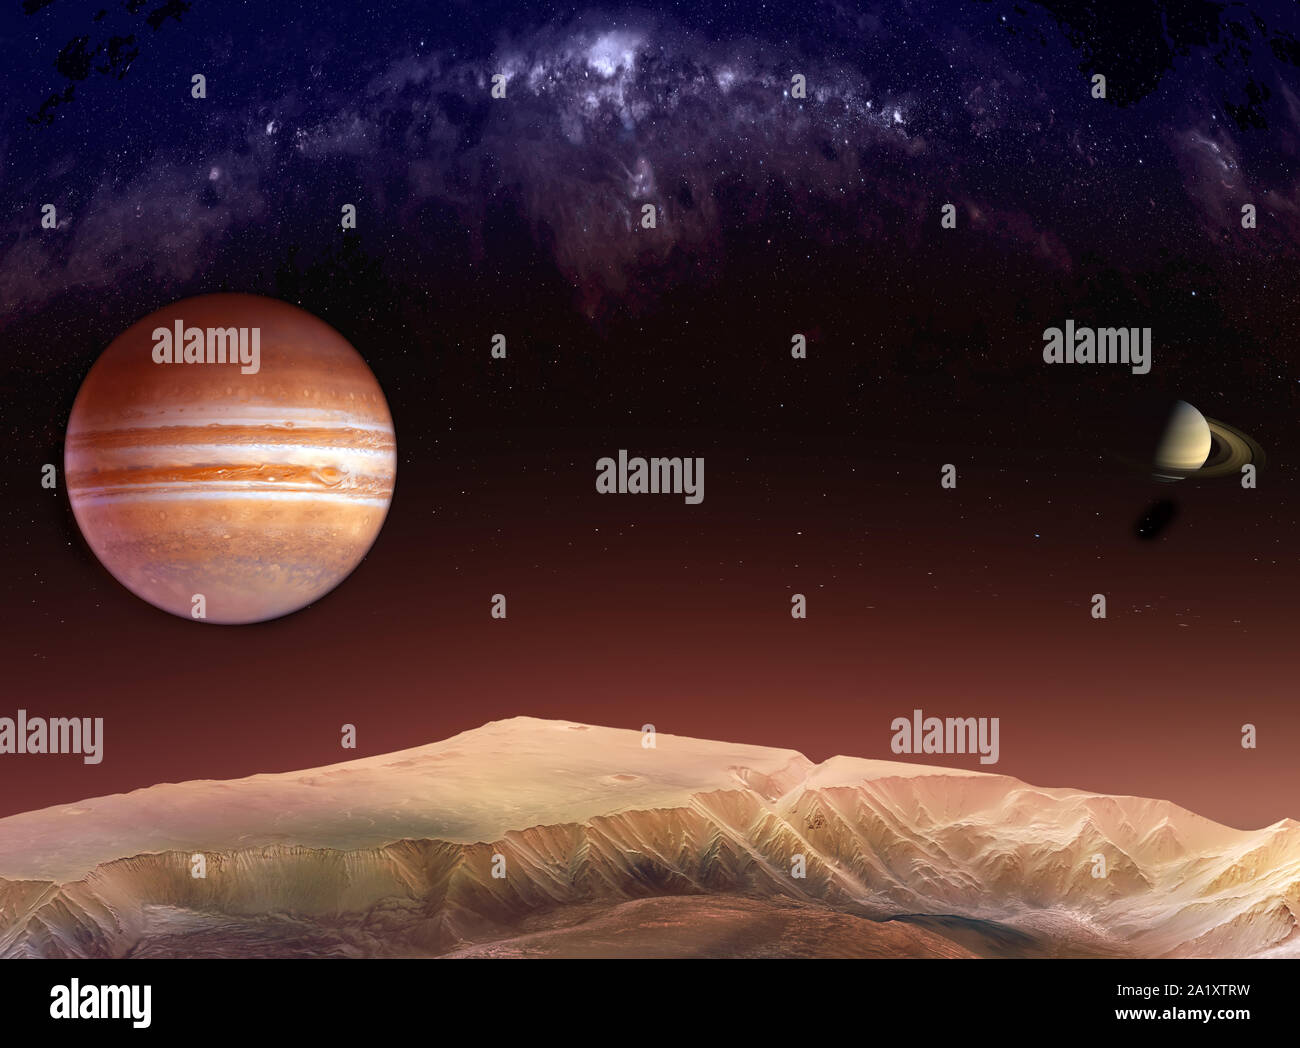 Landschaft in den Bergen von Mars mit Blick auf Jupiter und Saturn unter der Milchstraße. Texturen für 3D-Render Planeten Oberflächen von der NASA eingerichtet Stockfoto